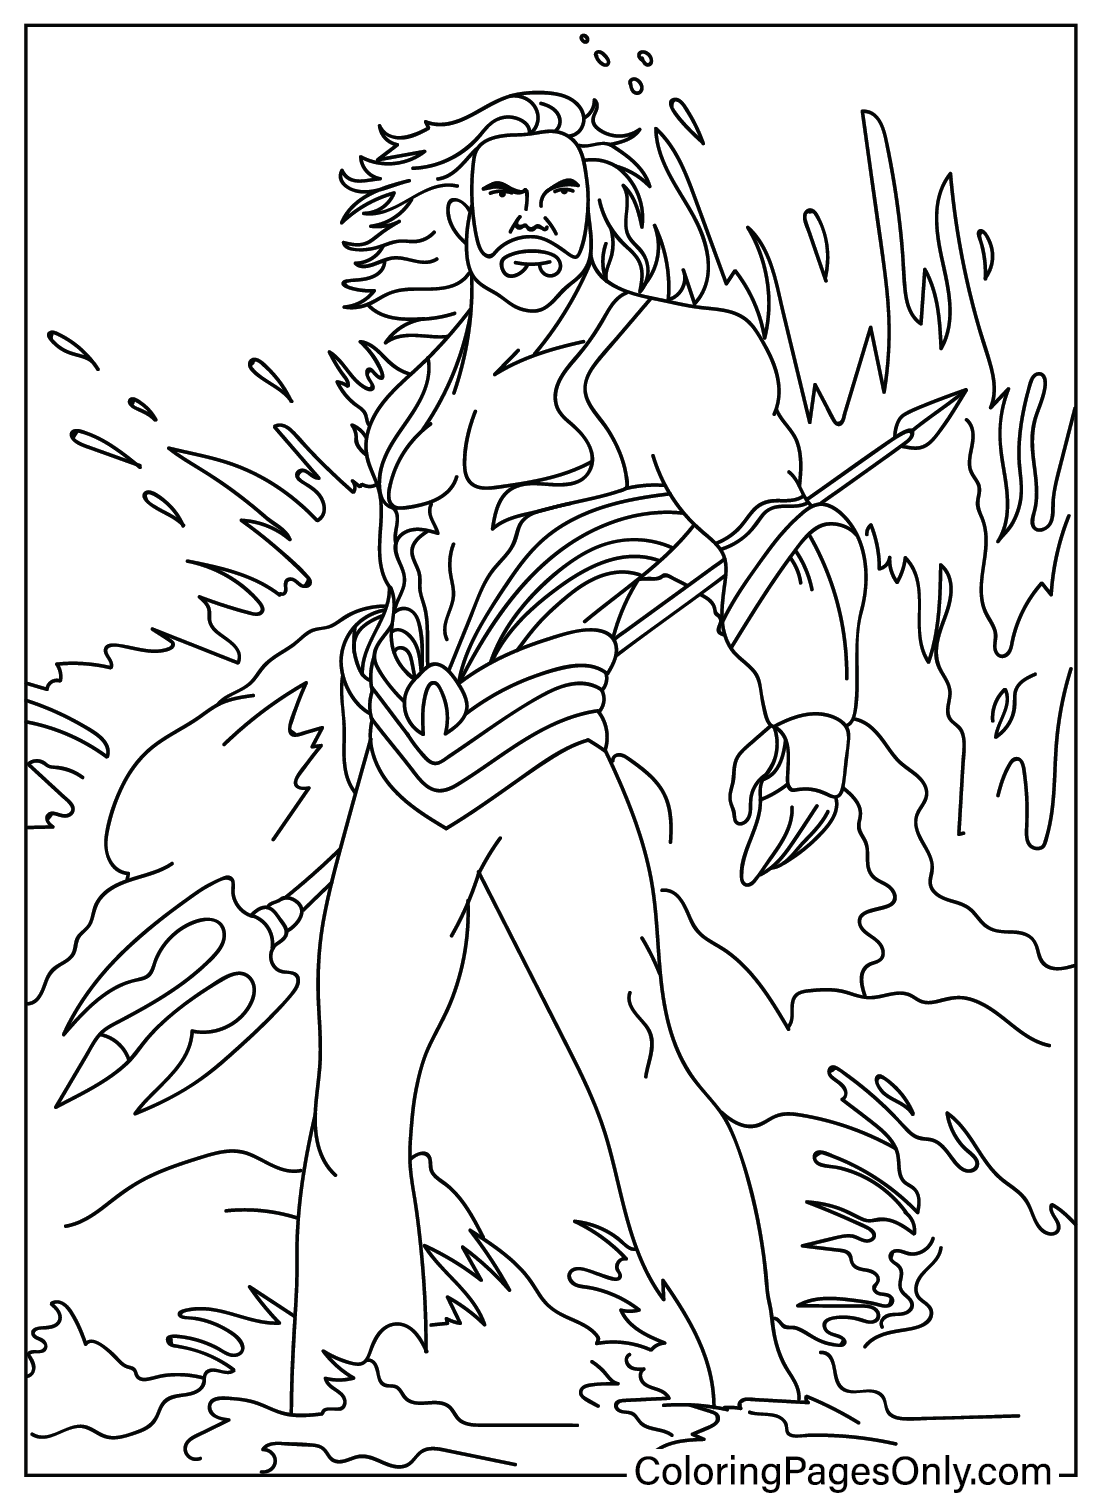 Página para colorir Aquaman de Aquaman